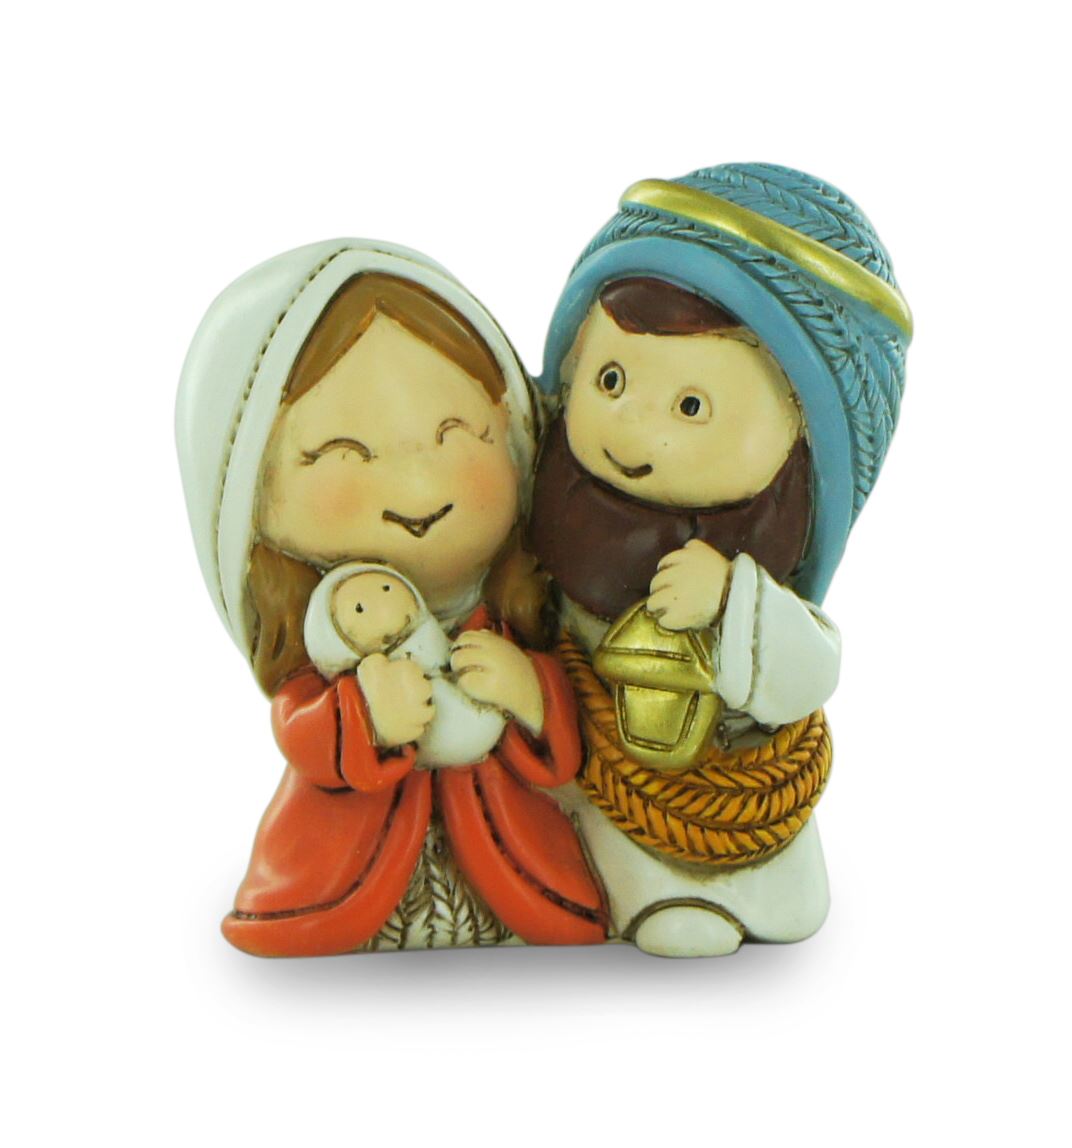 natività in resina colorata, decorazione natalizia/soprammobile, piccola statuina della sacra famiglia, 5 x 5,5 cm